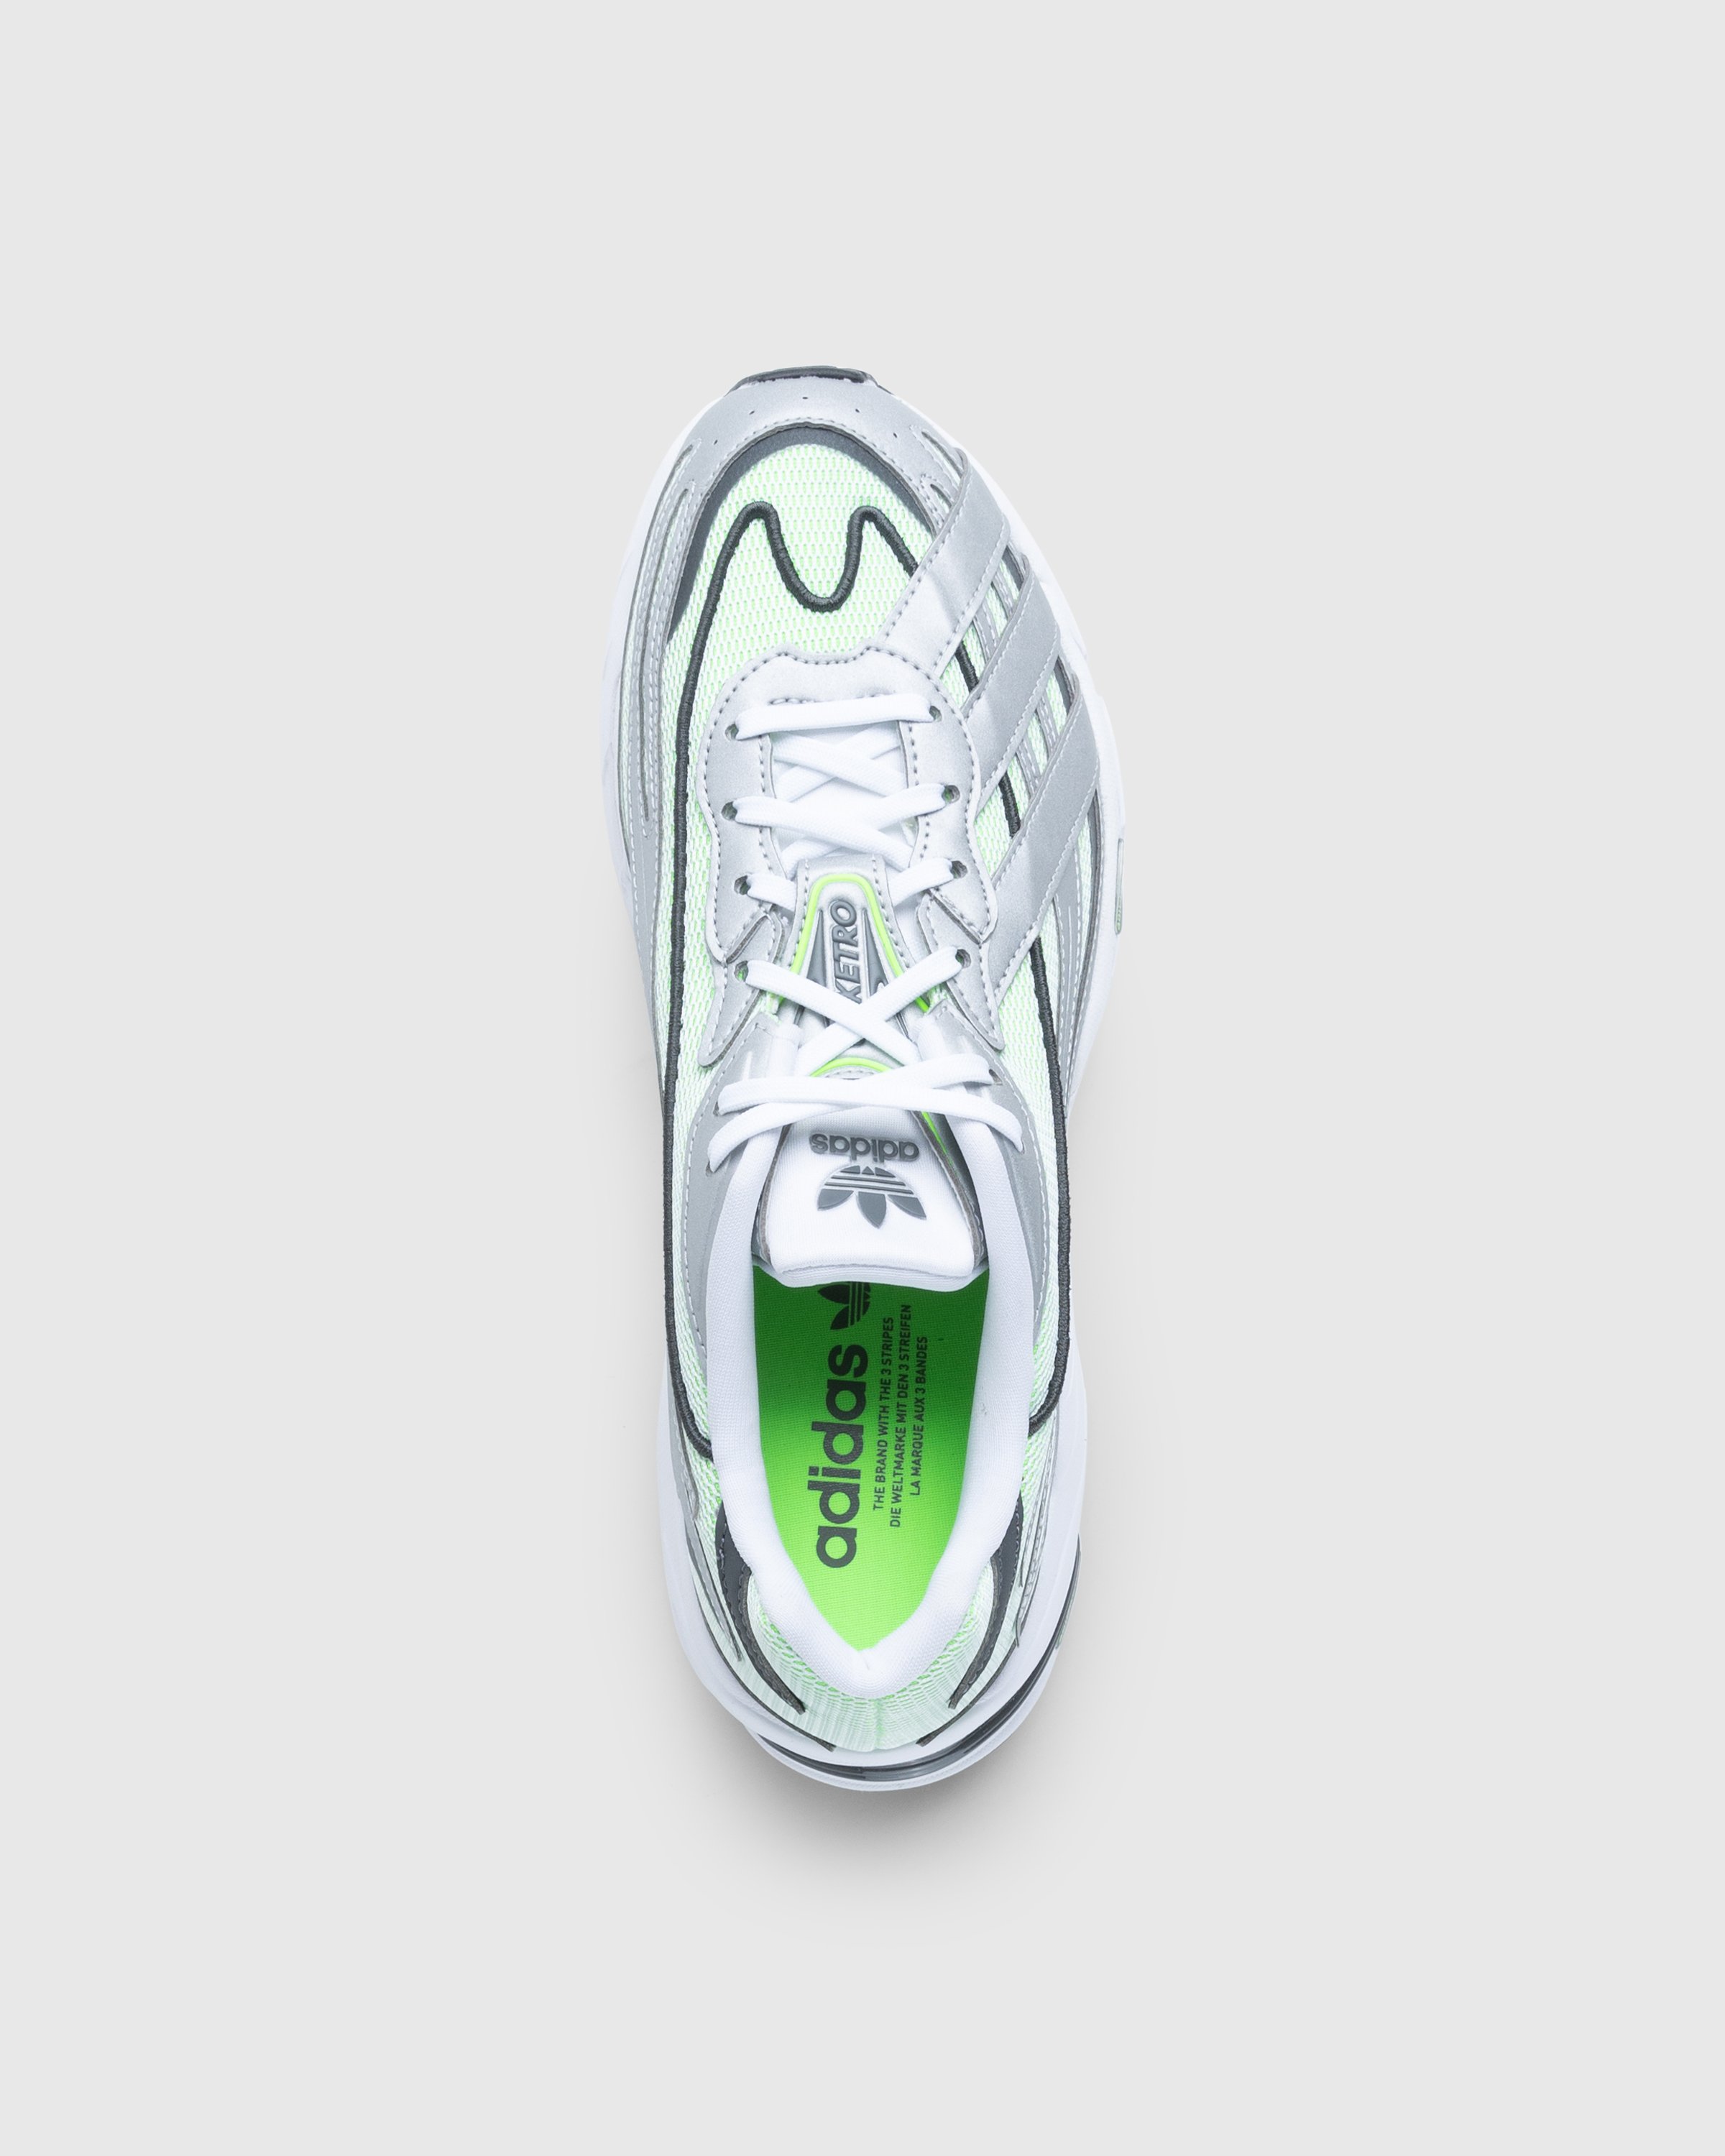 Adidas - Orketro White/Silver - Footwear - White - Image 6